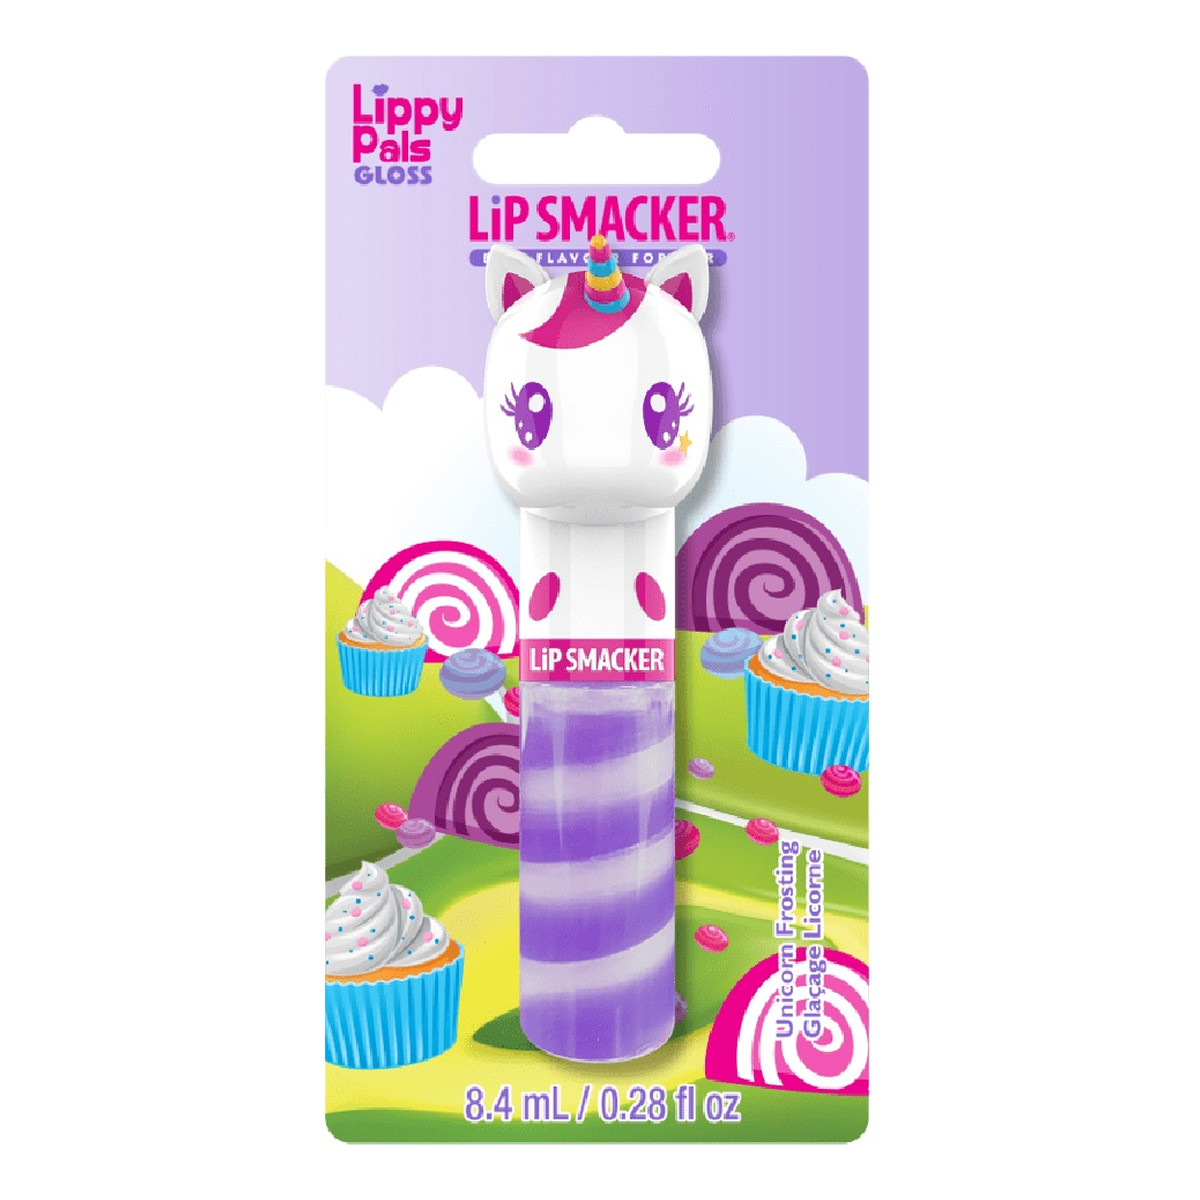 Lip Smacker Lippy pals gloss błyszczyk do ust unicorn frosting 8,4 ml